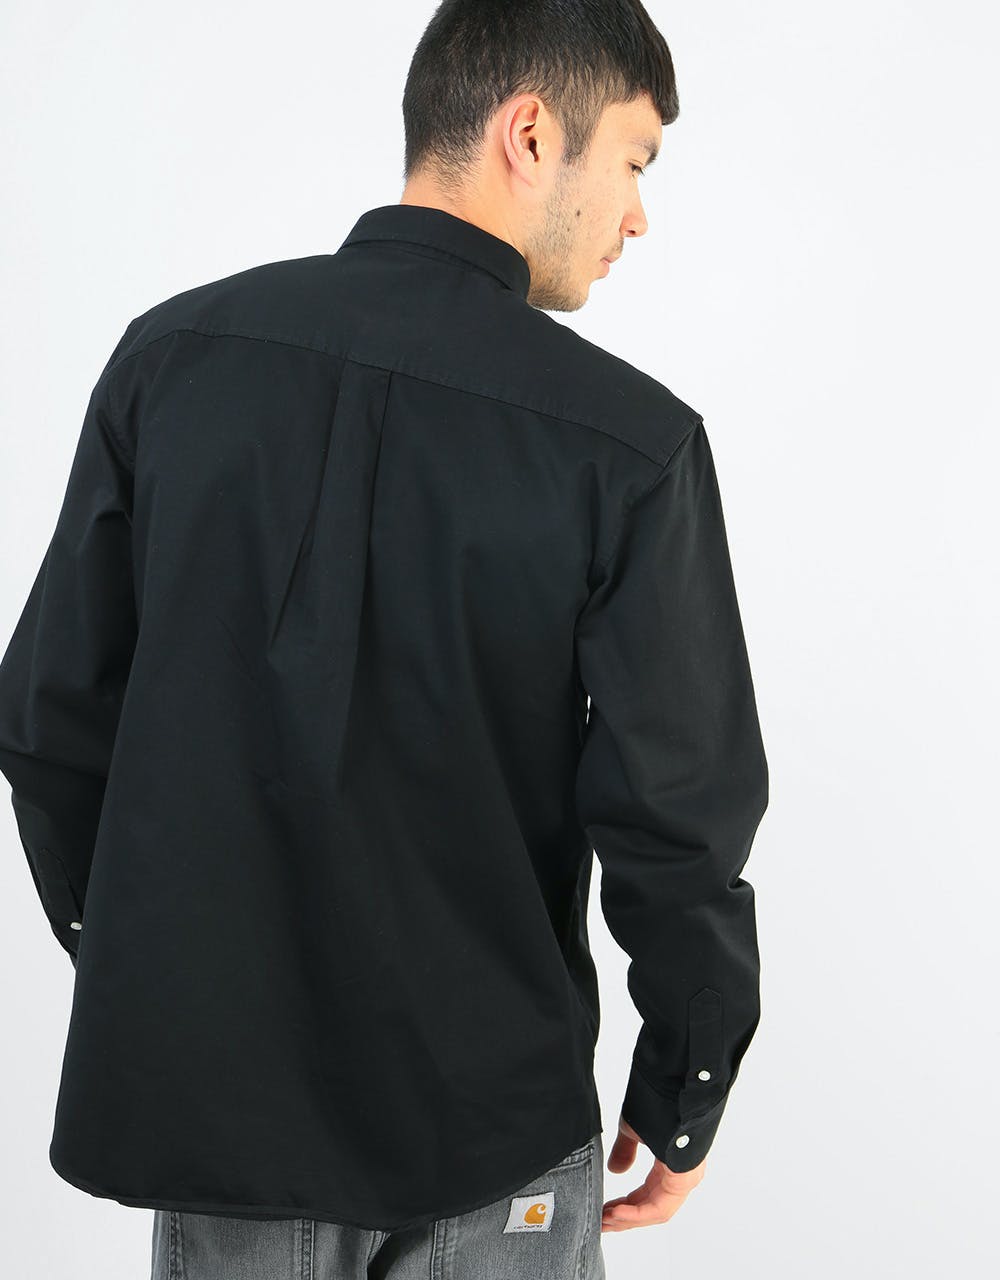 Carhartt WIP L/S Madison Shirt - Black/Wax